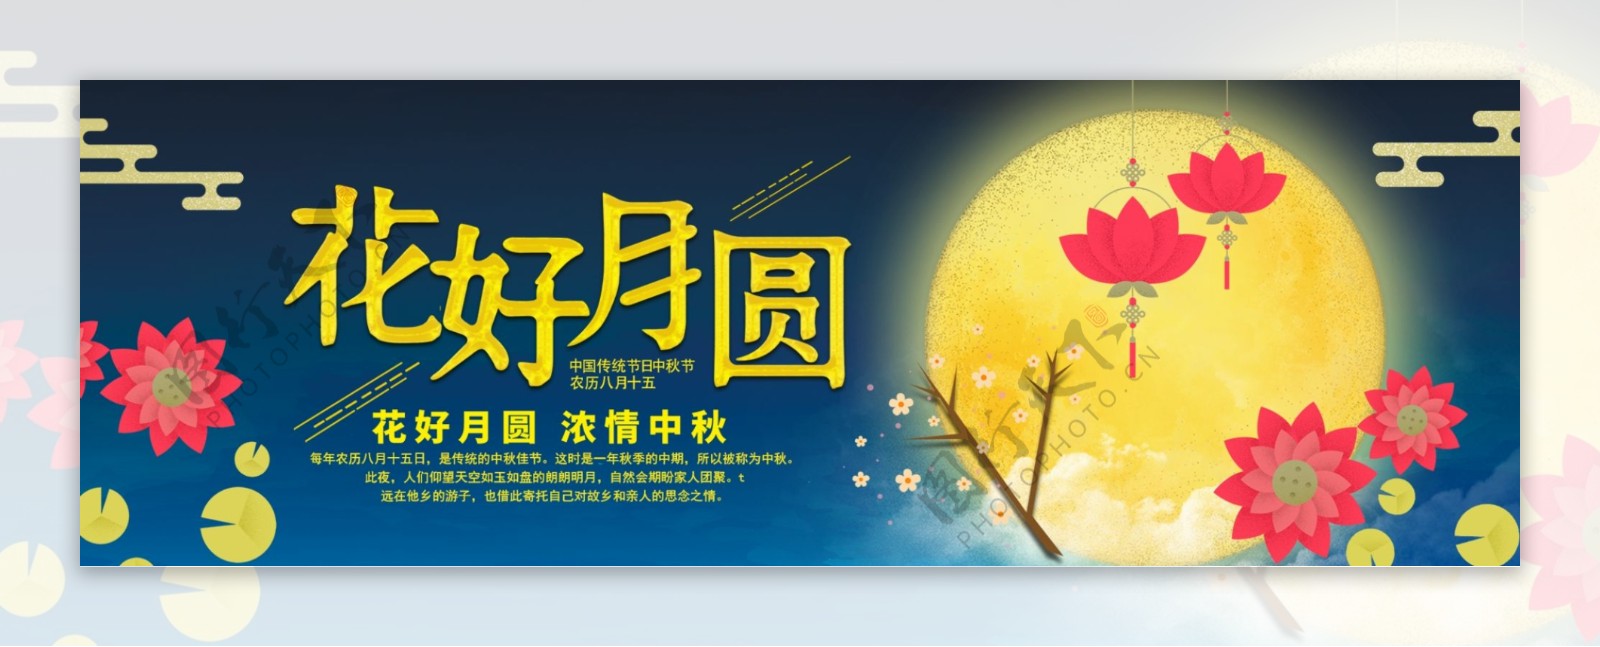 深蓝色夜空月亮星星卡通荷花月亮中秋节电商banner淘宝海报